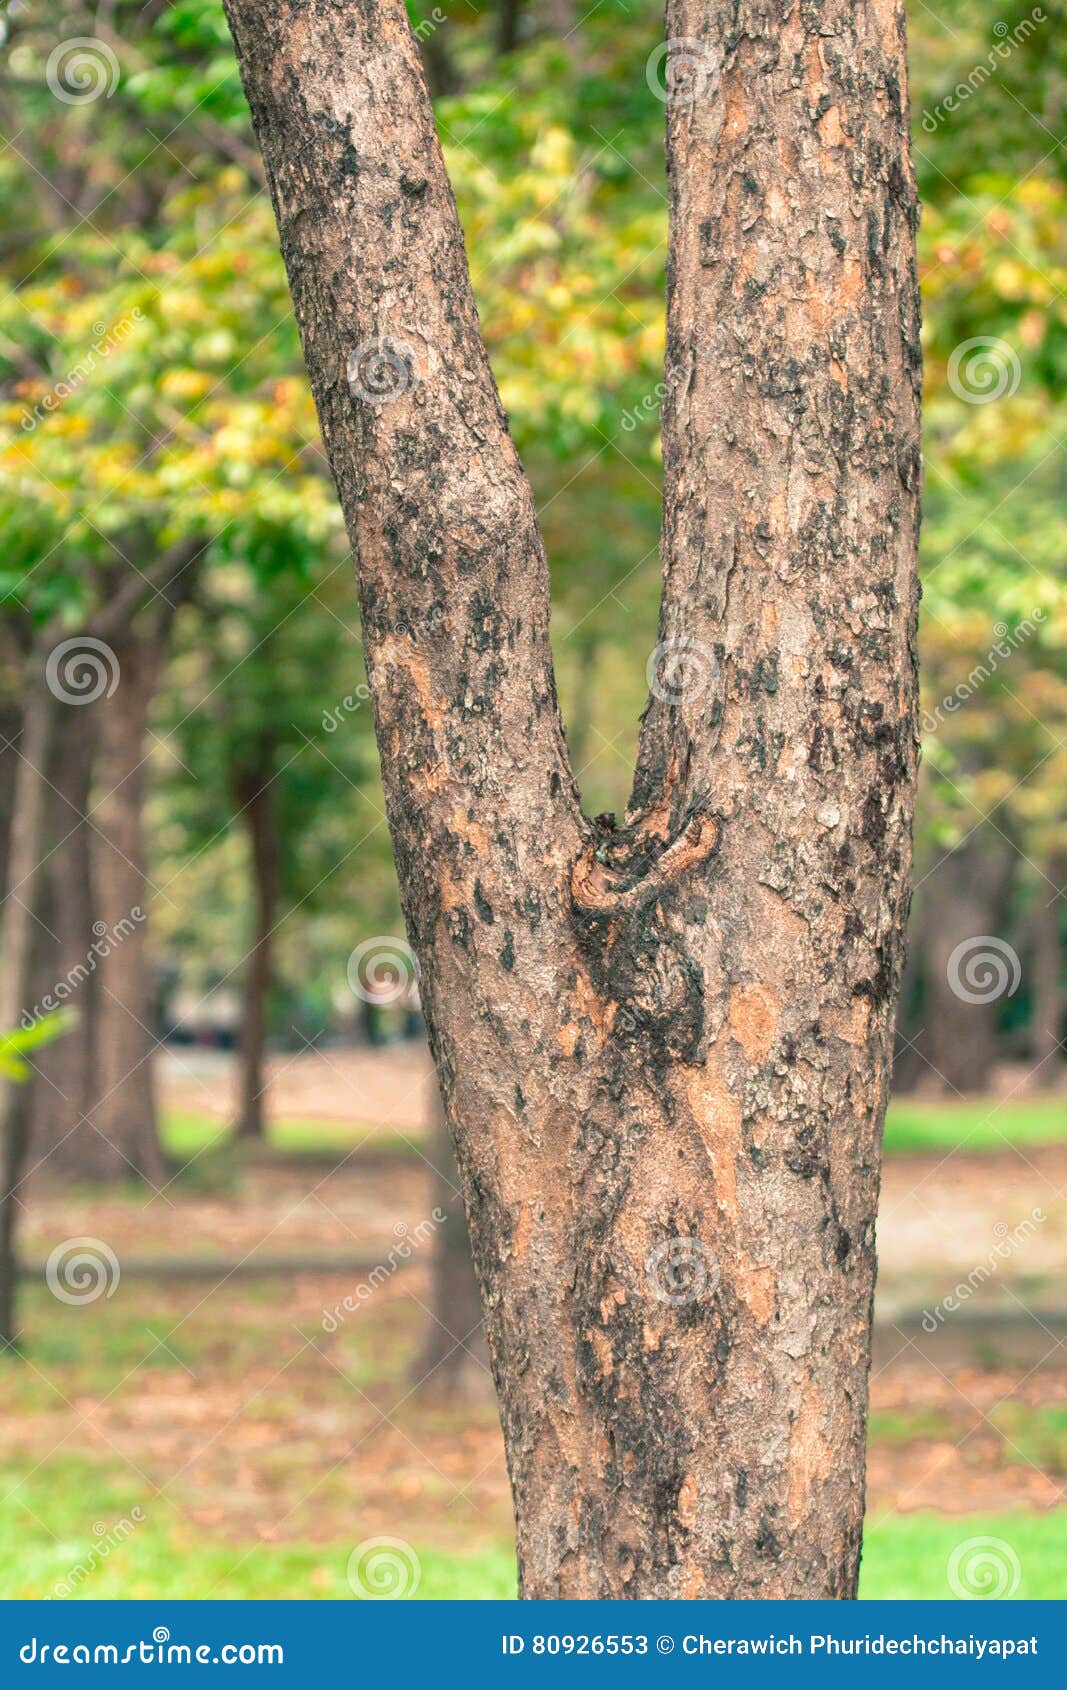 Hình nền cây mờ trong công viên Thái Lan mang đến một cảm giác thư thái và tĩnh lặng cho người ngắm. Chỉ một lần nhìn và bạn sẽ thấy được sức hút của nó.